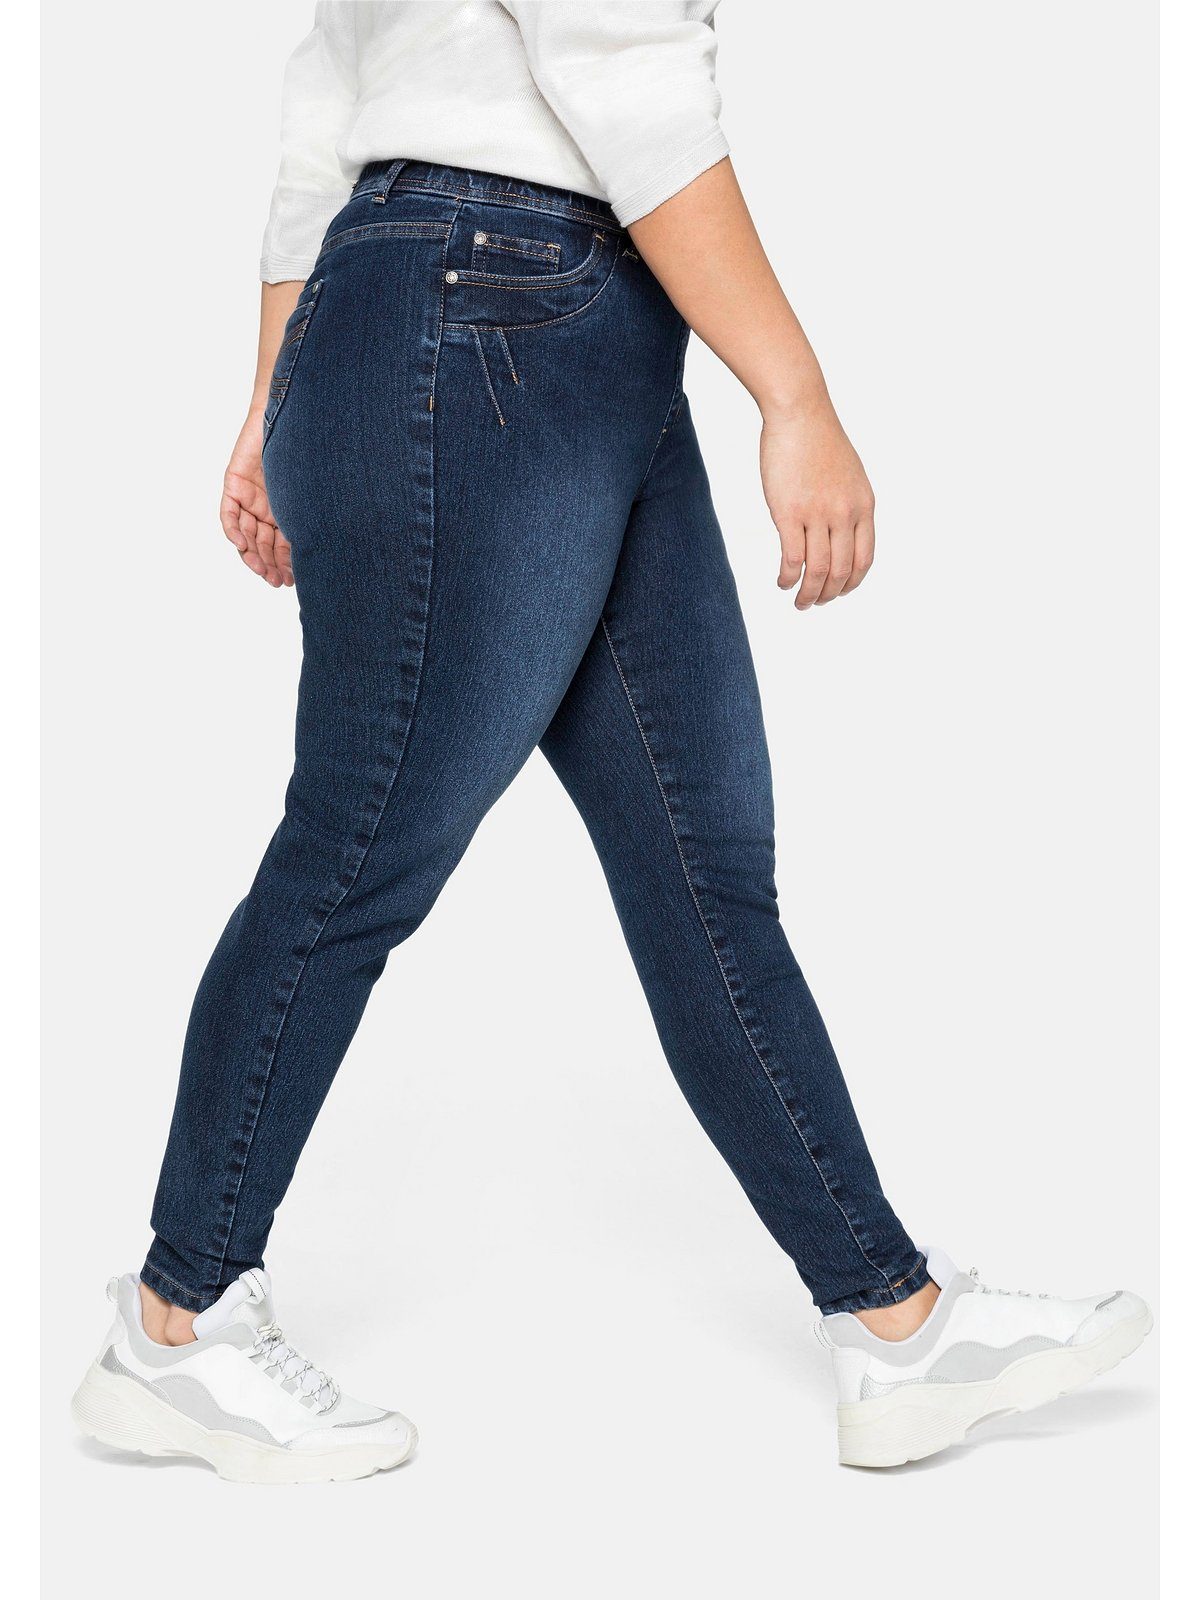 Sheego Stretch-Jeans Größen Große und Gürtelschlaufen dark blue Denim mit Gummibund